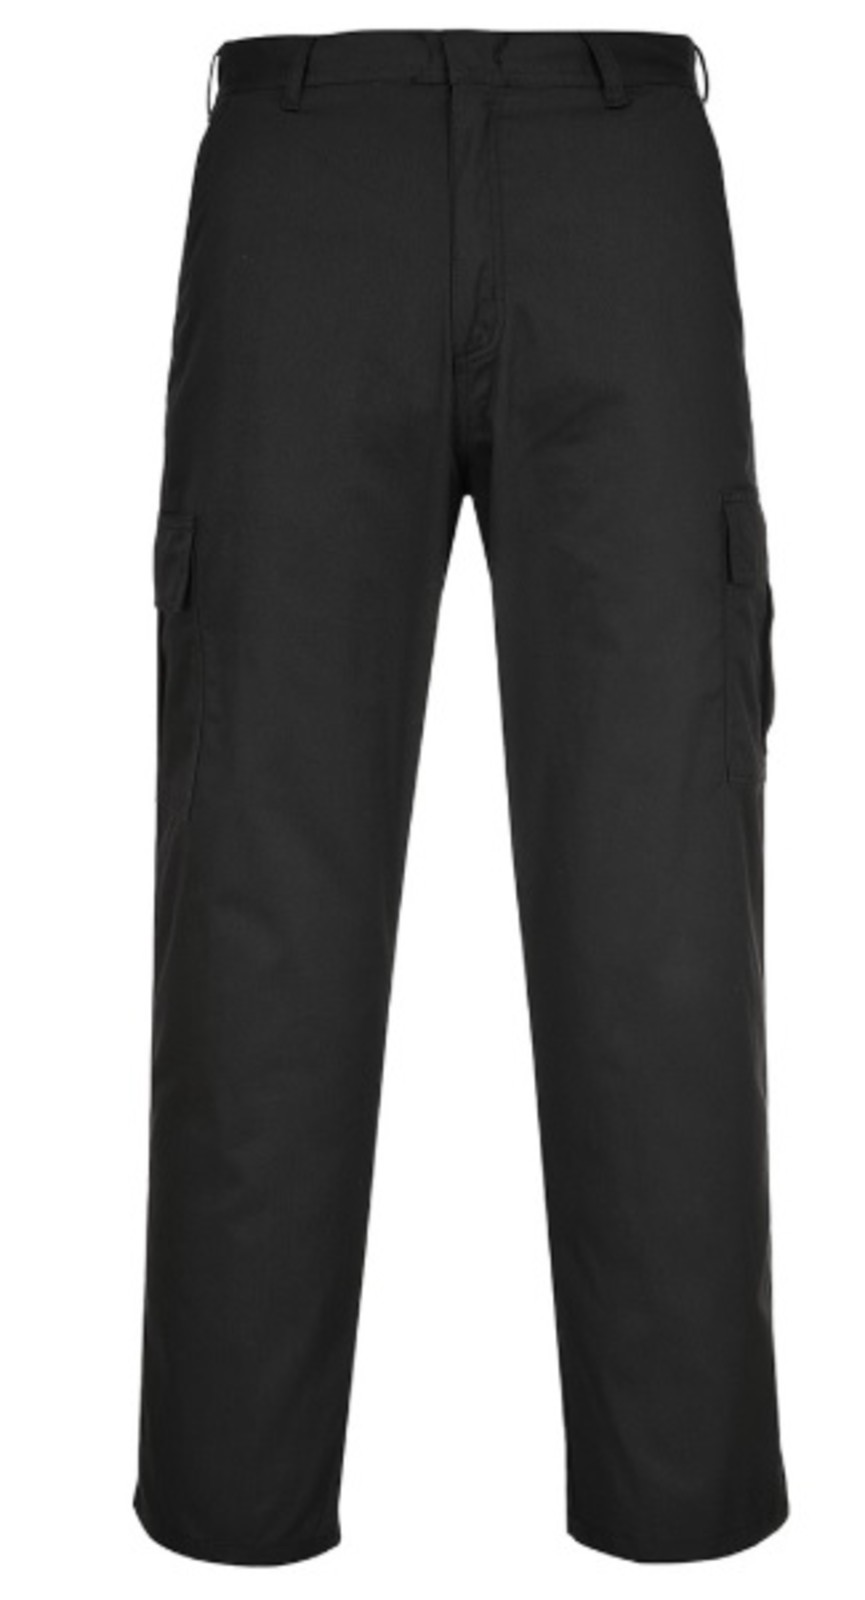 Pracovné nohavice Portwest Combat C701 - veľkosť: 66, farba: čierna